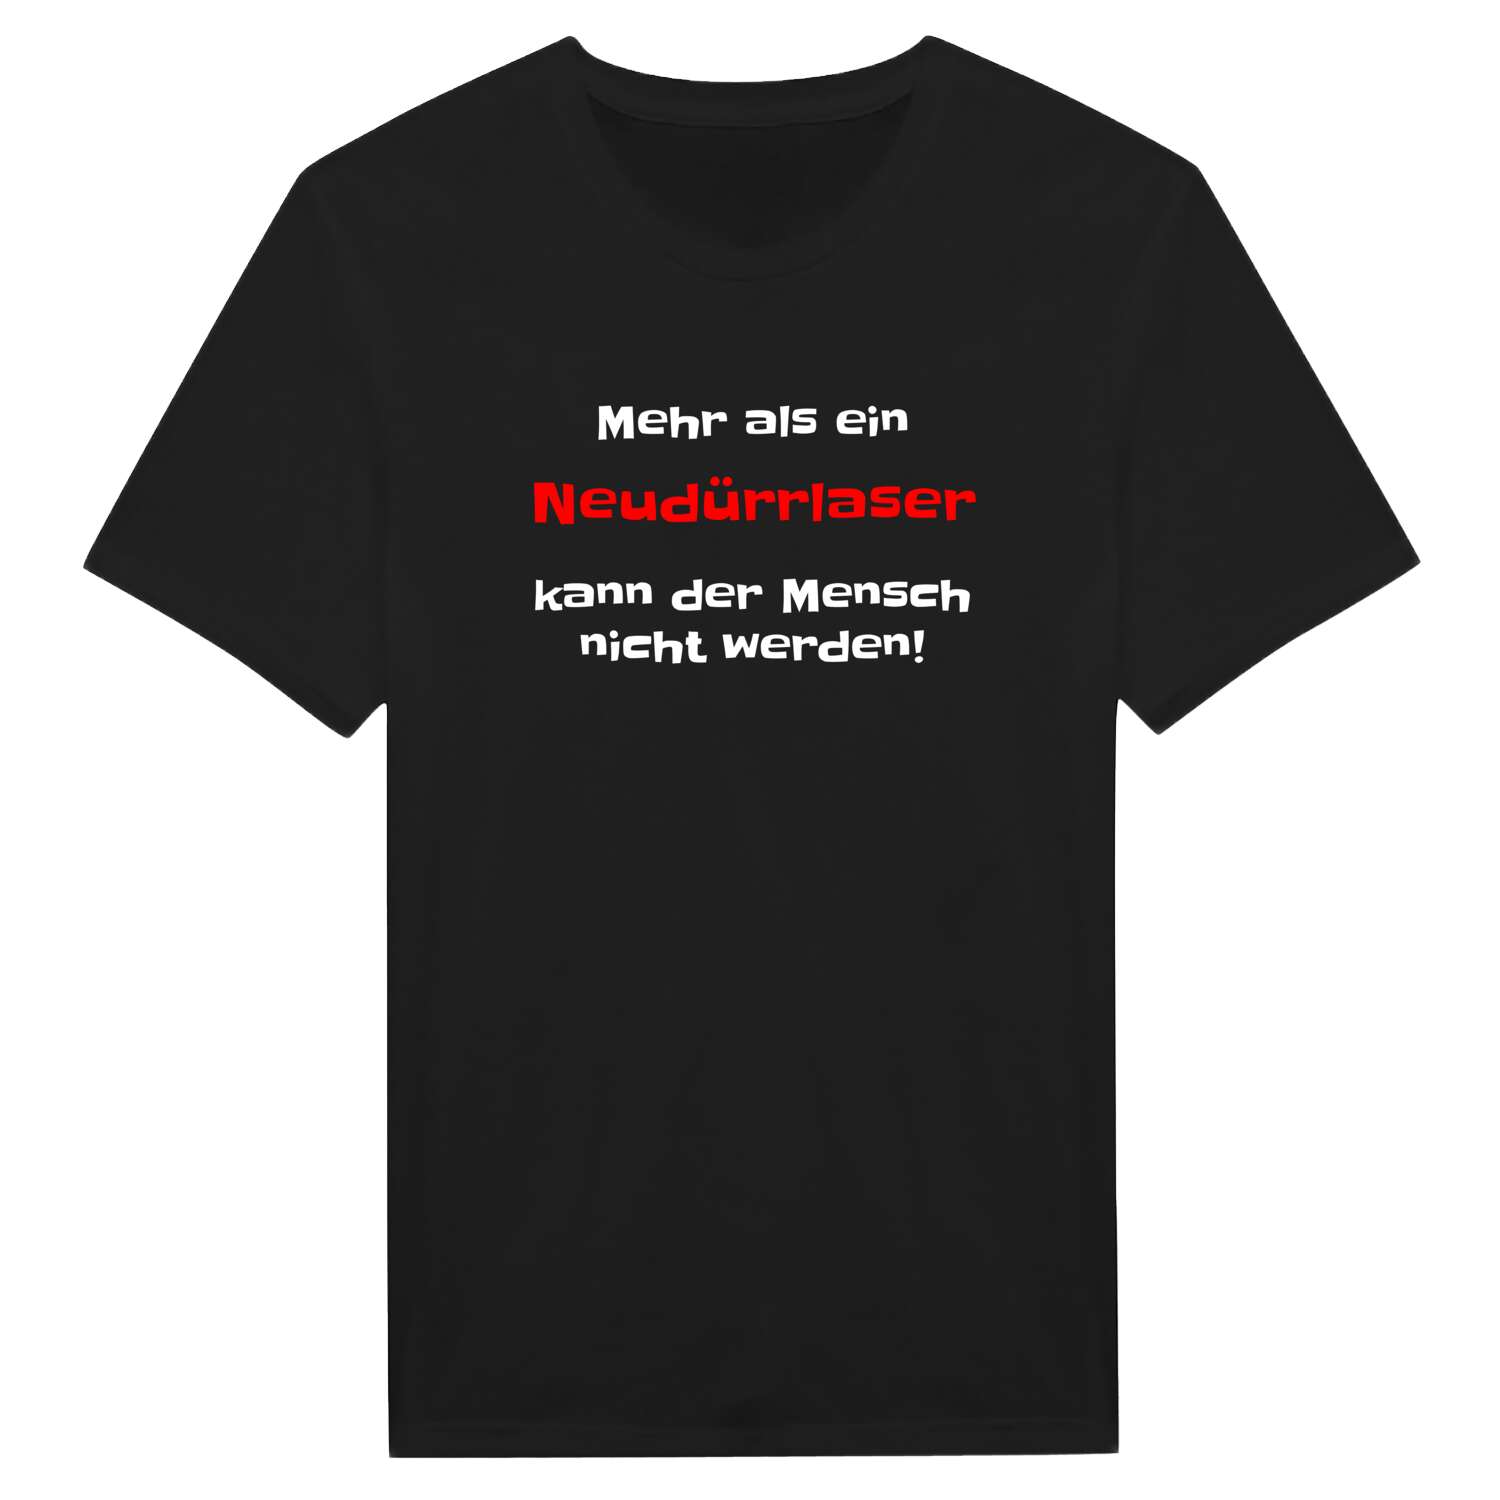 Neudürrlas T-Shirt »Mehr als ein«